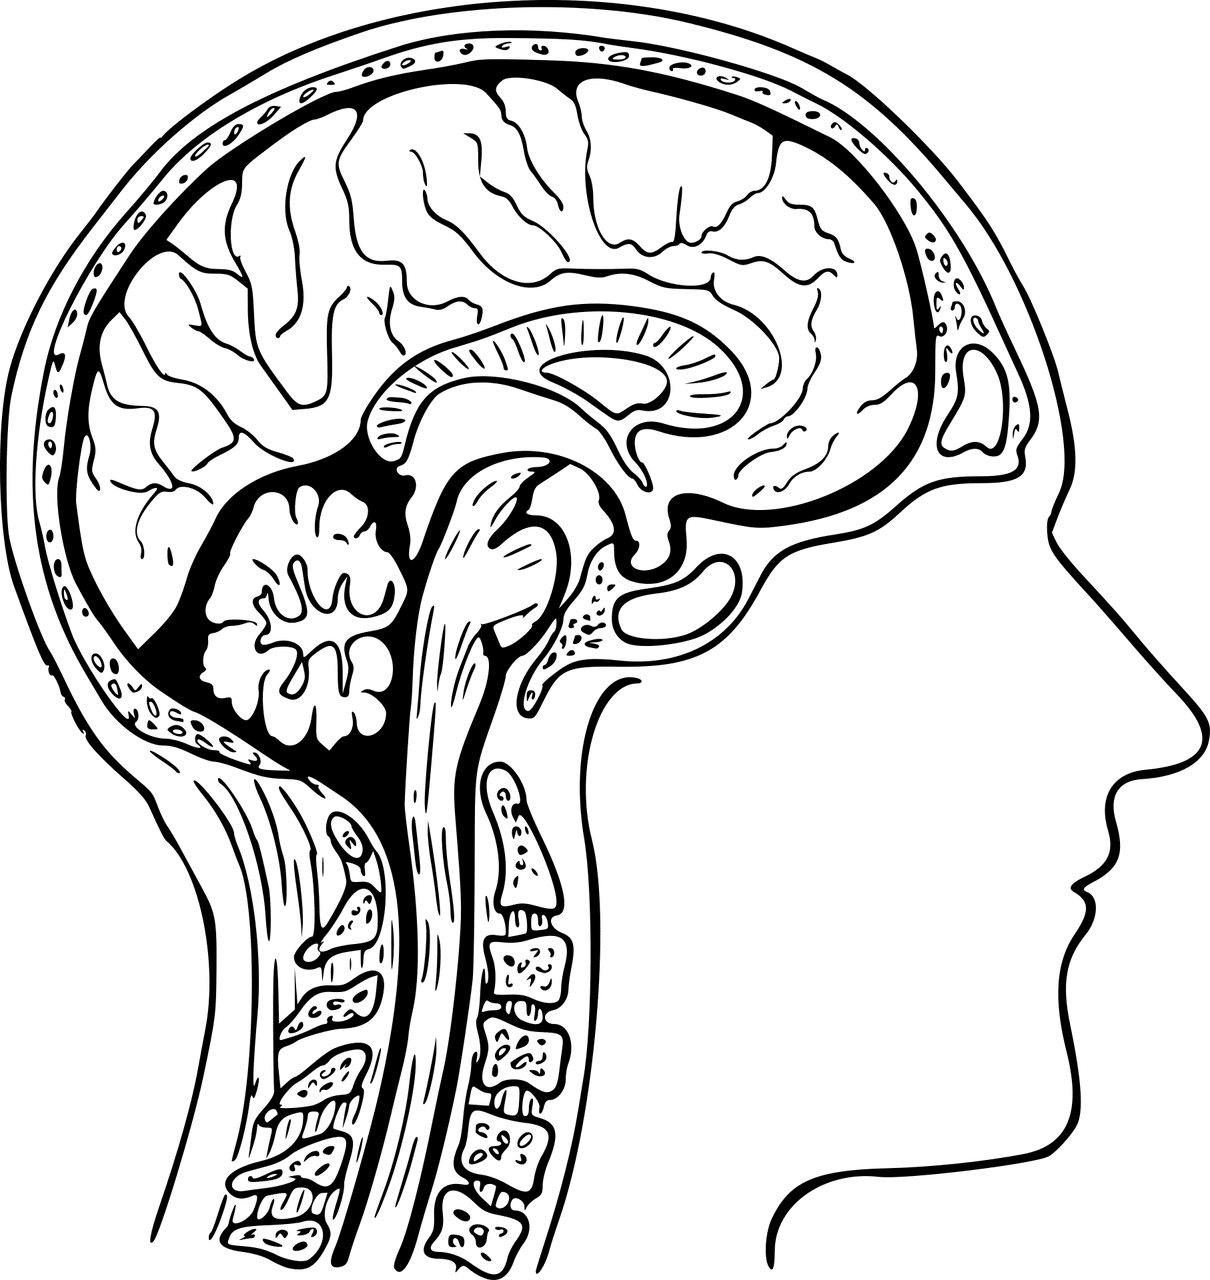 Anatomía cerebral